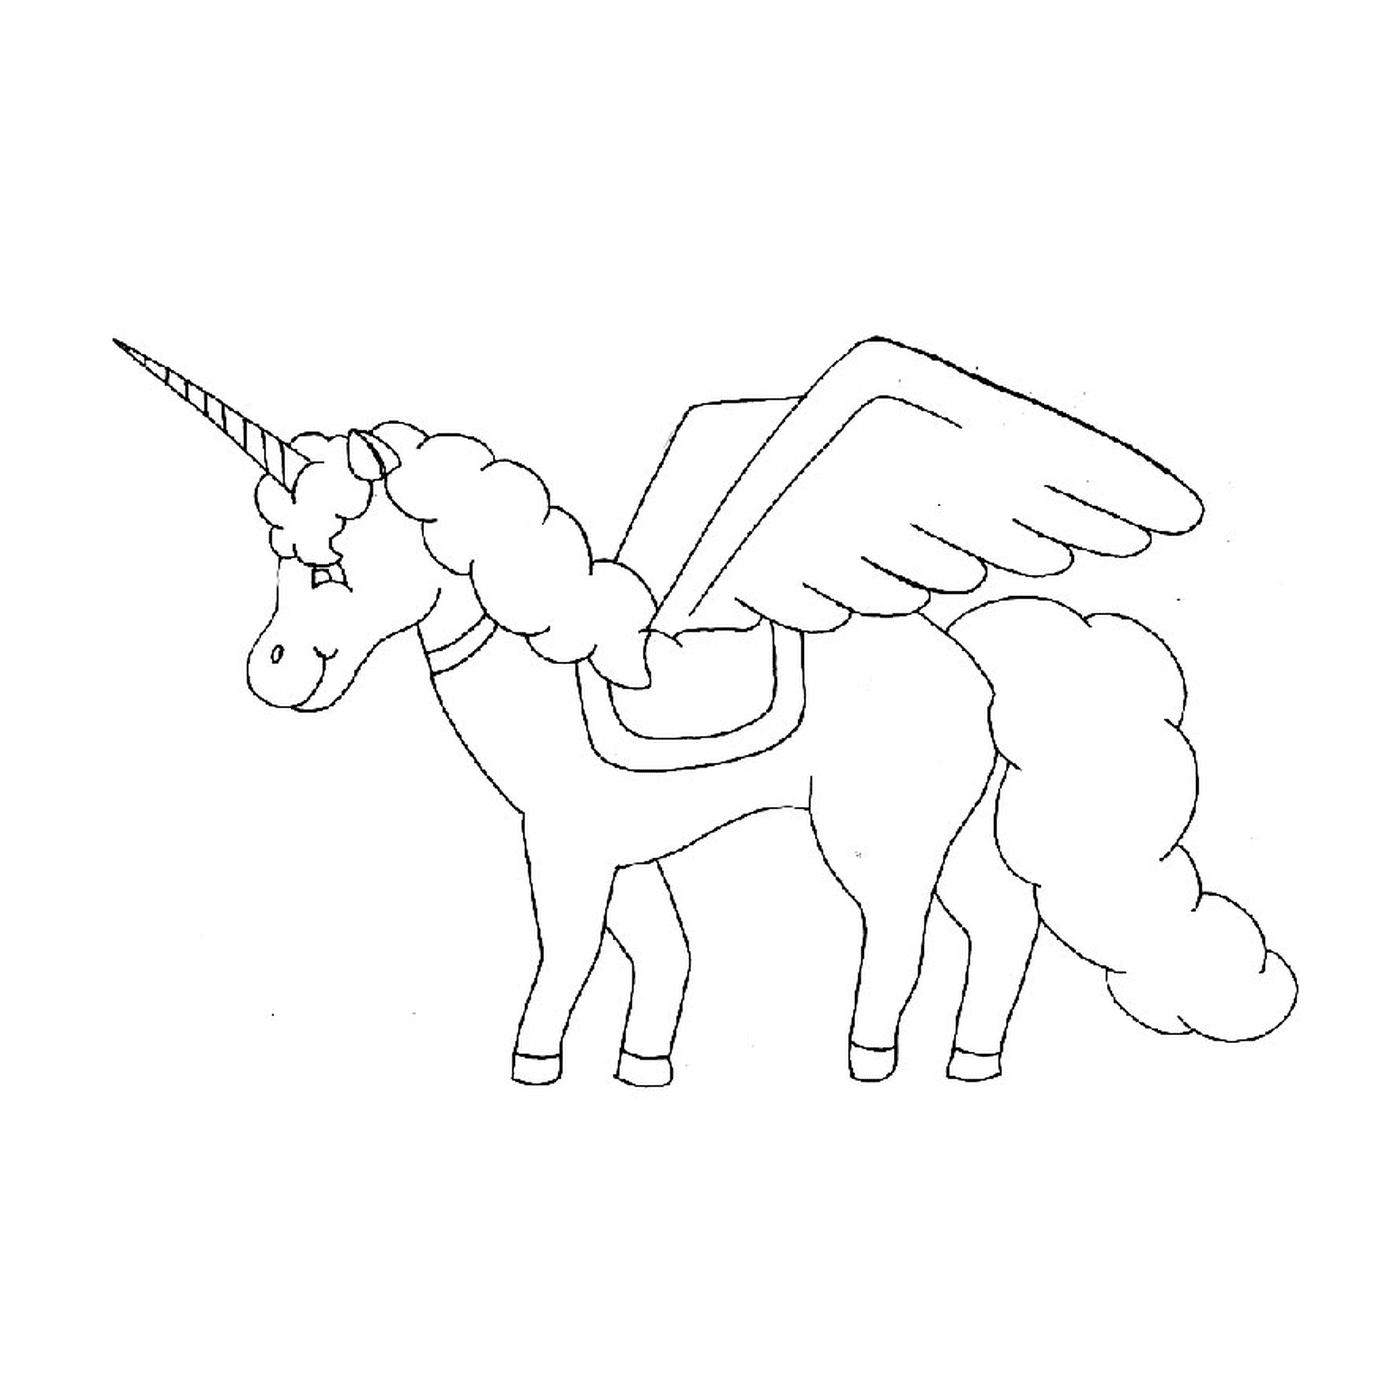  Cavalo voador - Um unicórnio com asas 